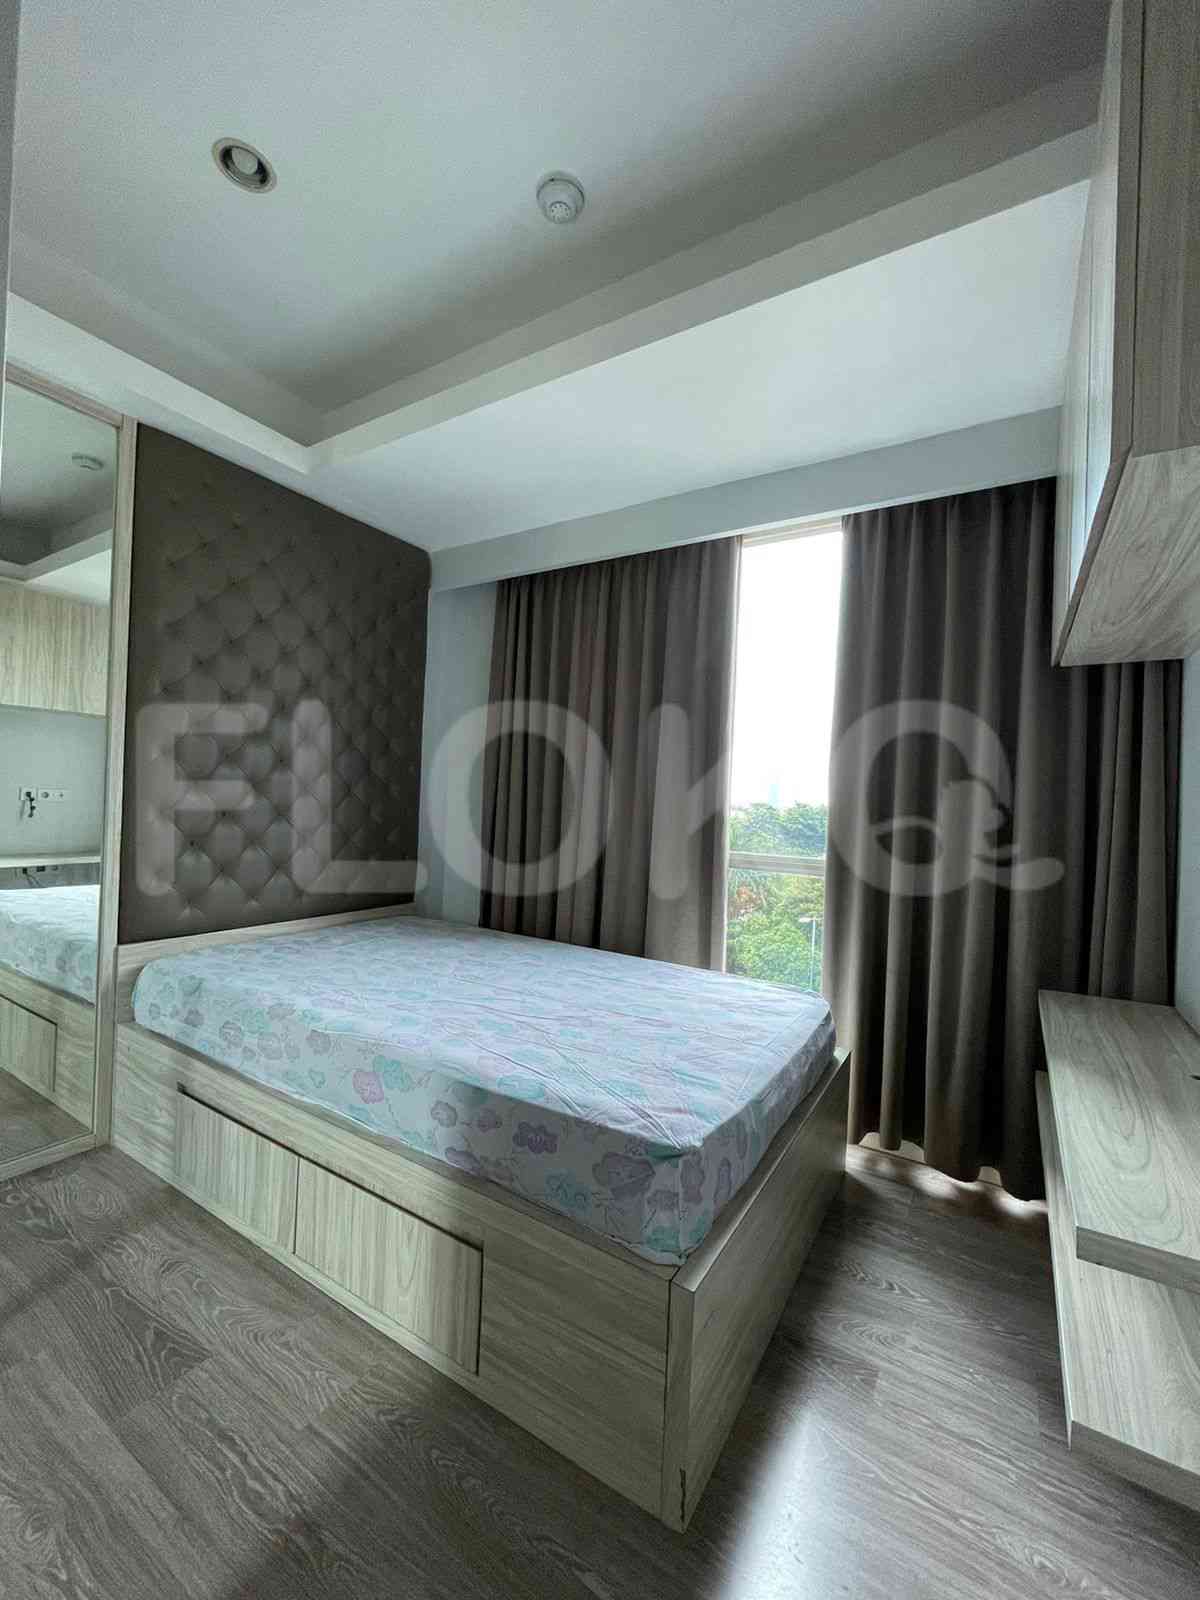 3 Bedroom on 5th Floor for Rent in Casa Grande - fte1f1 3